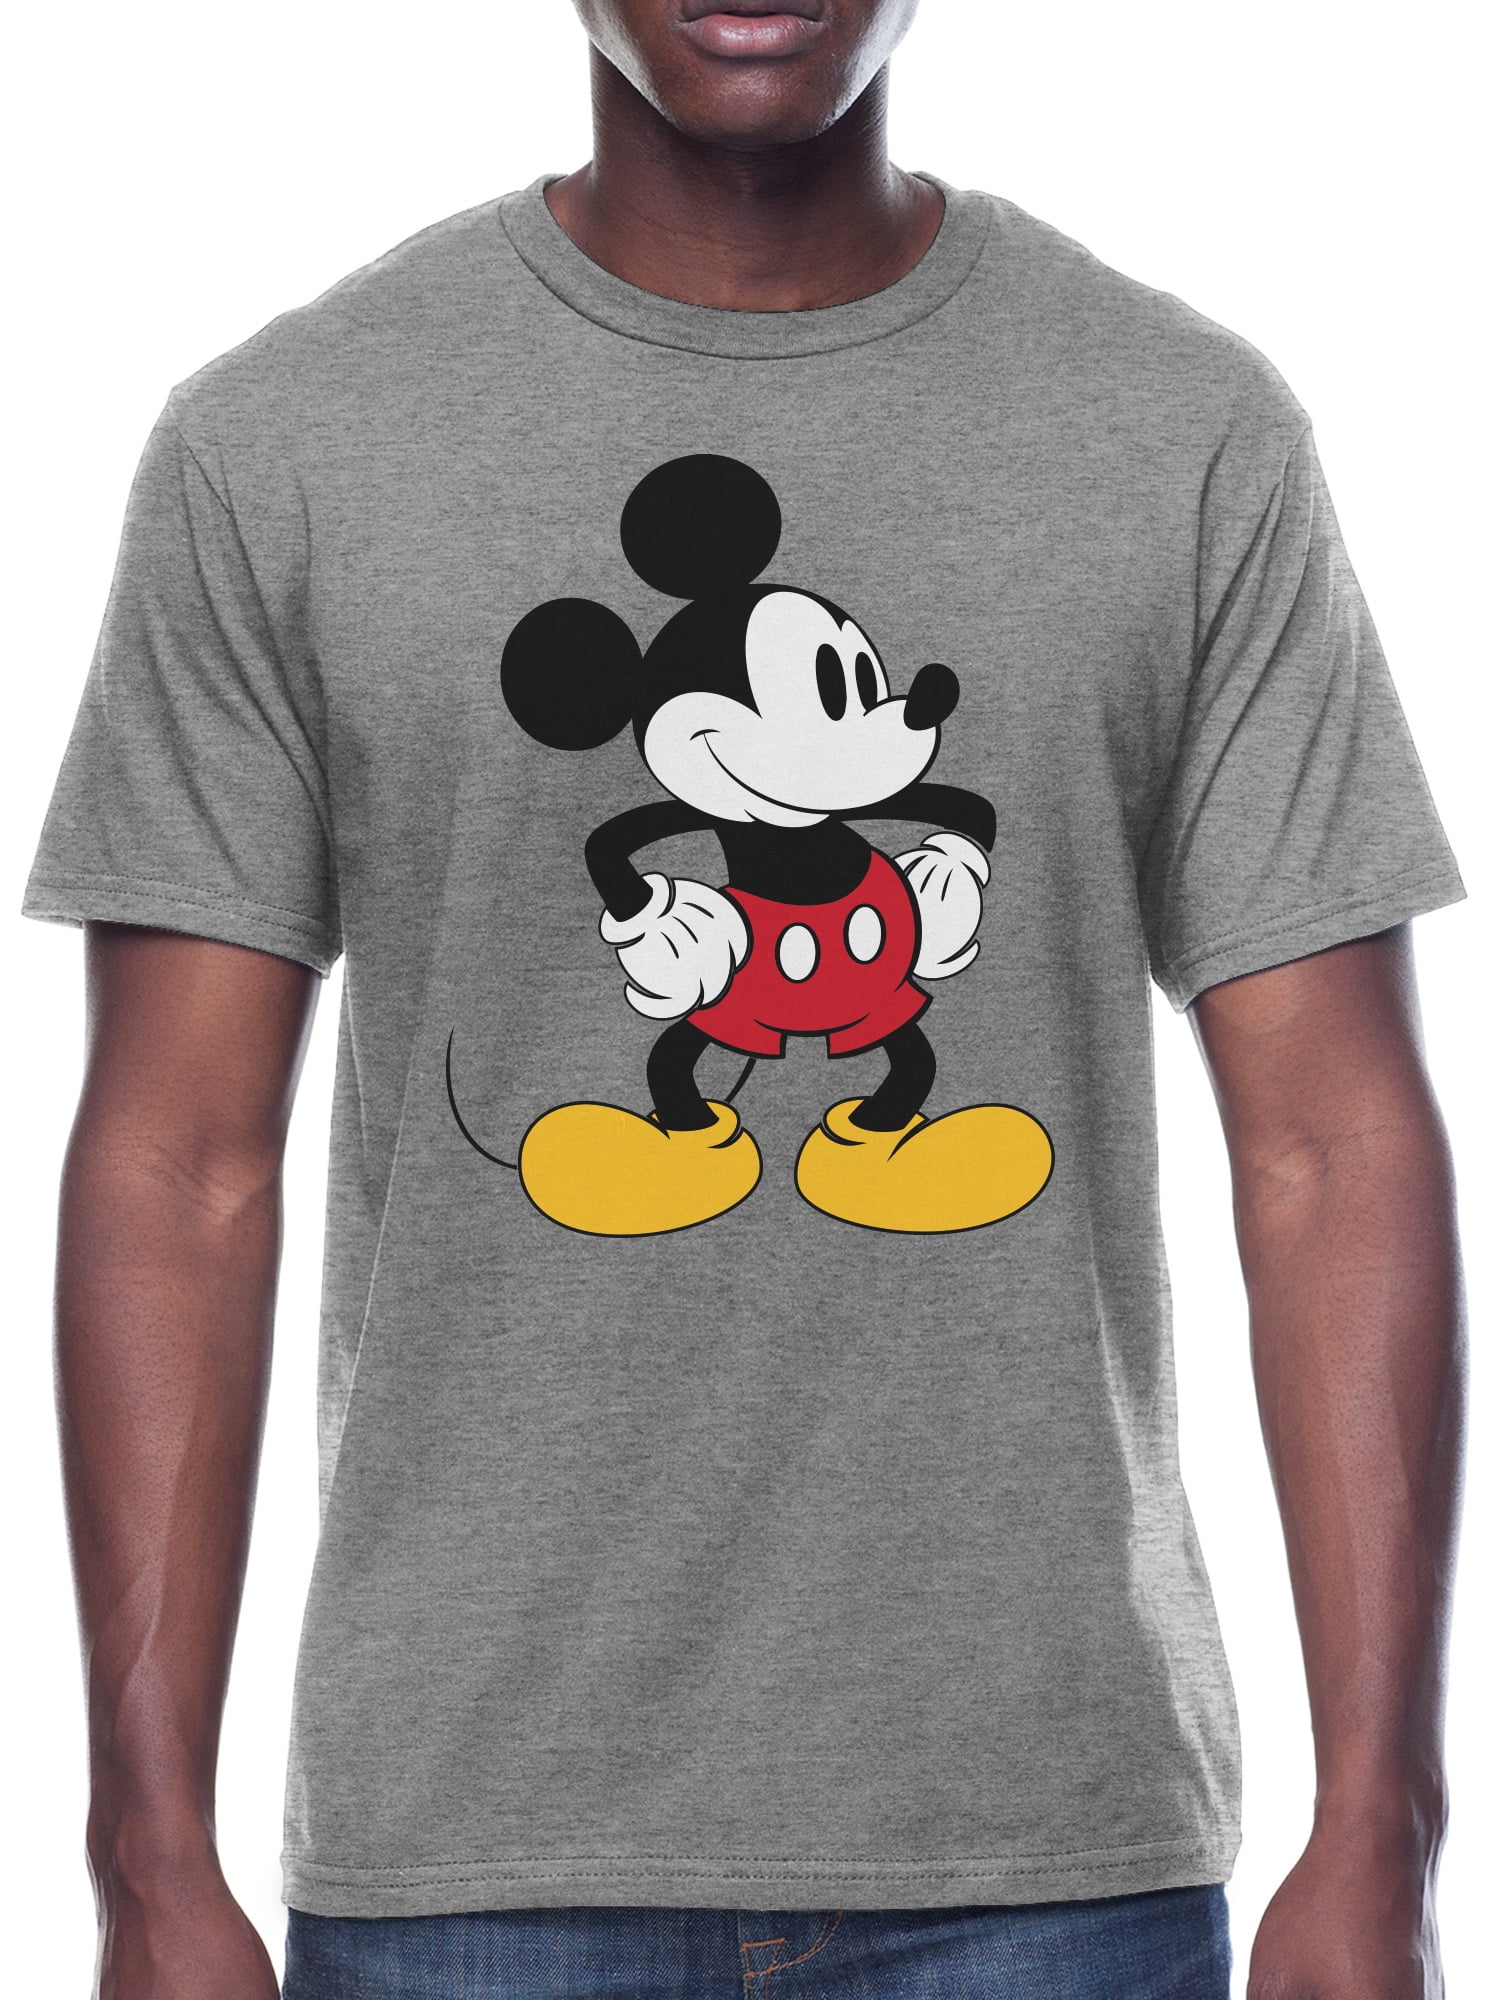 Disney Womens T-shirt Mickey and Minnie Disneyland Top Tee Cotton S M L XL NEW 